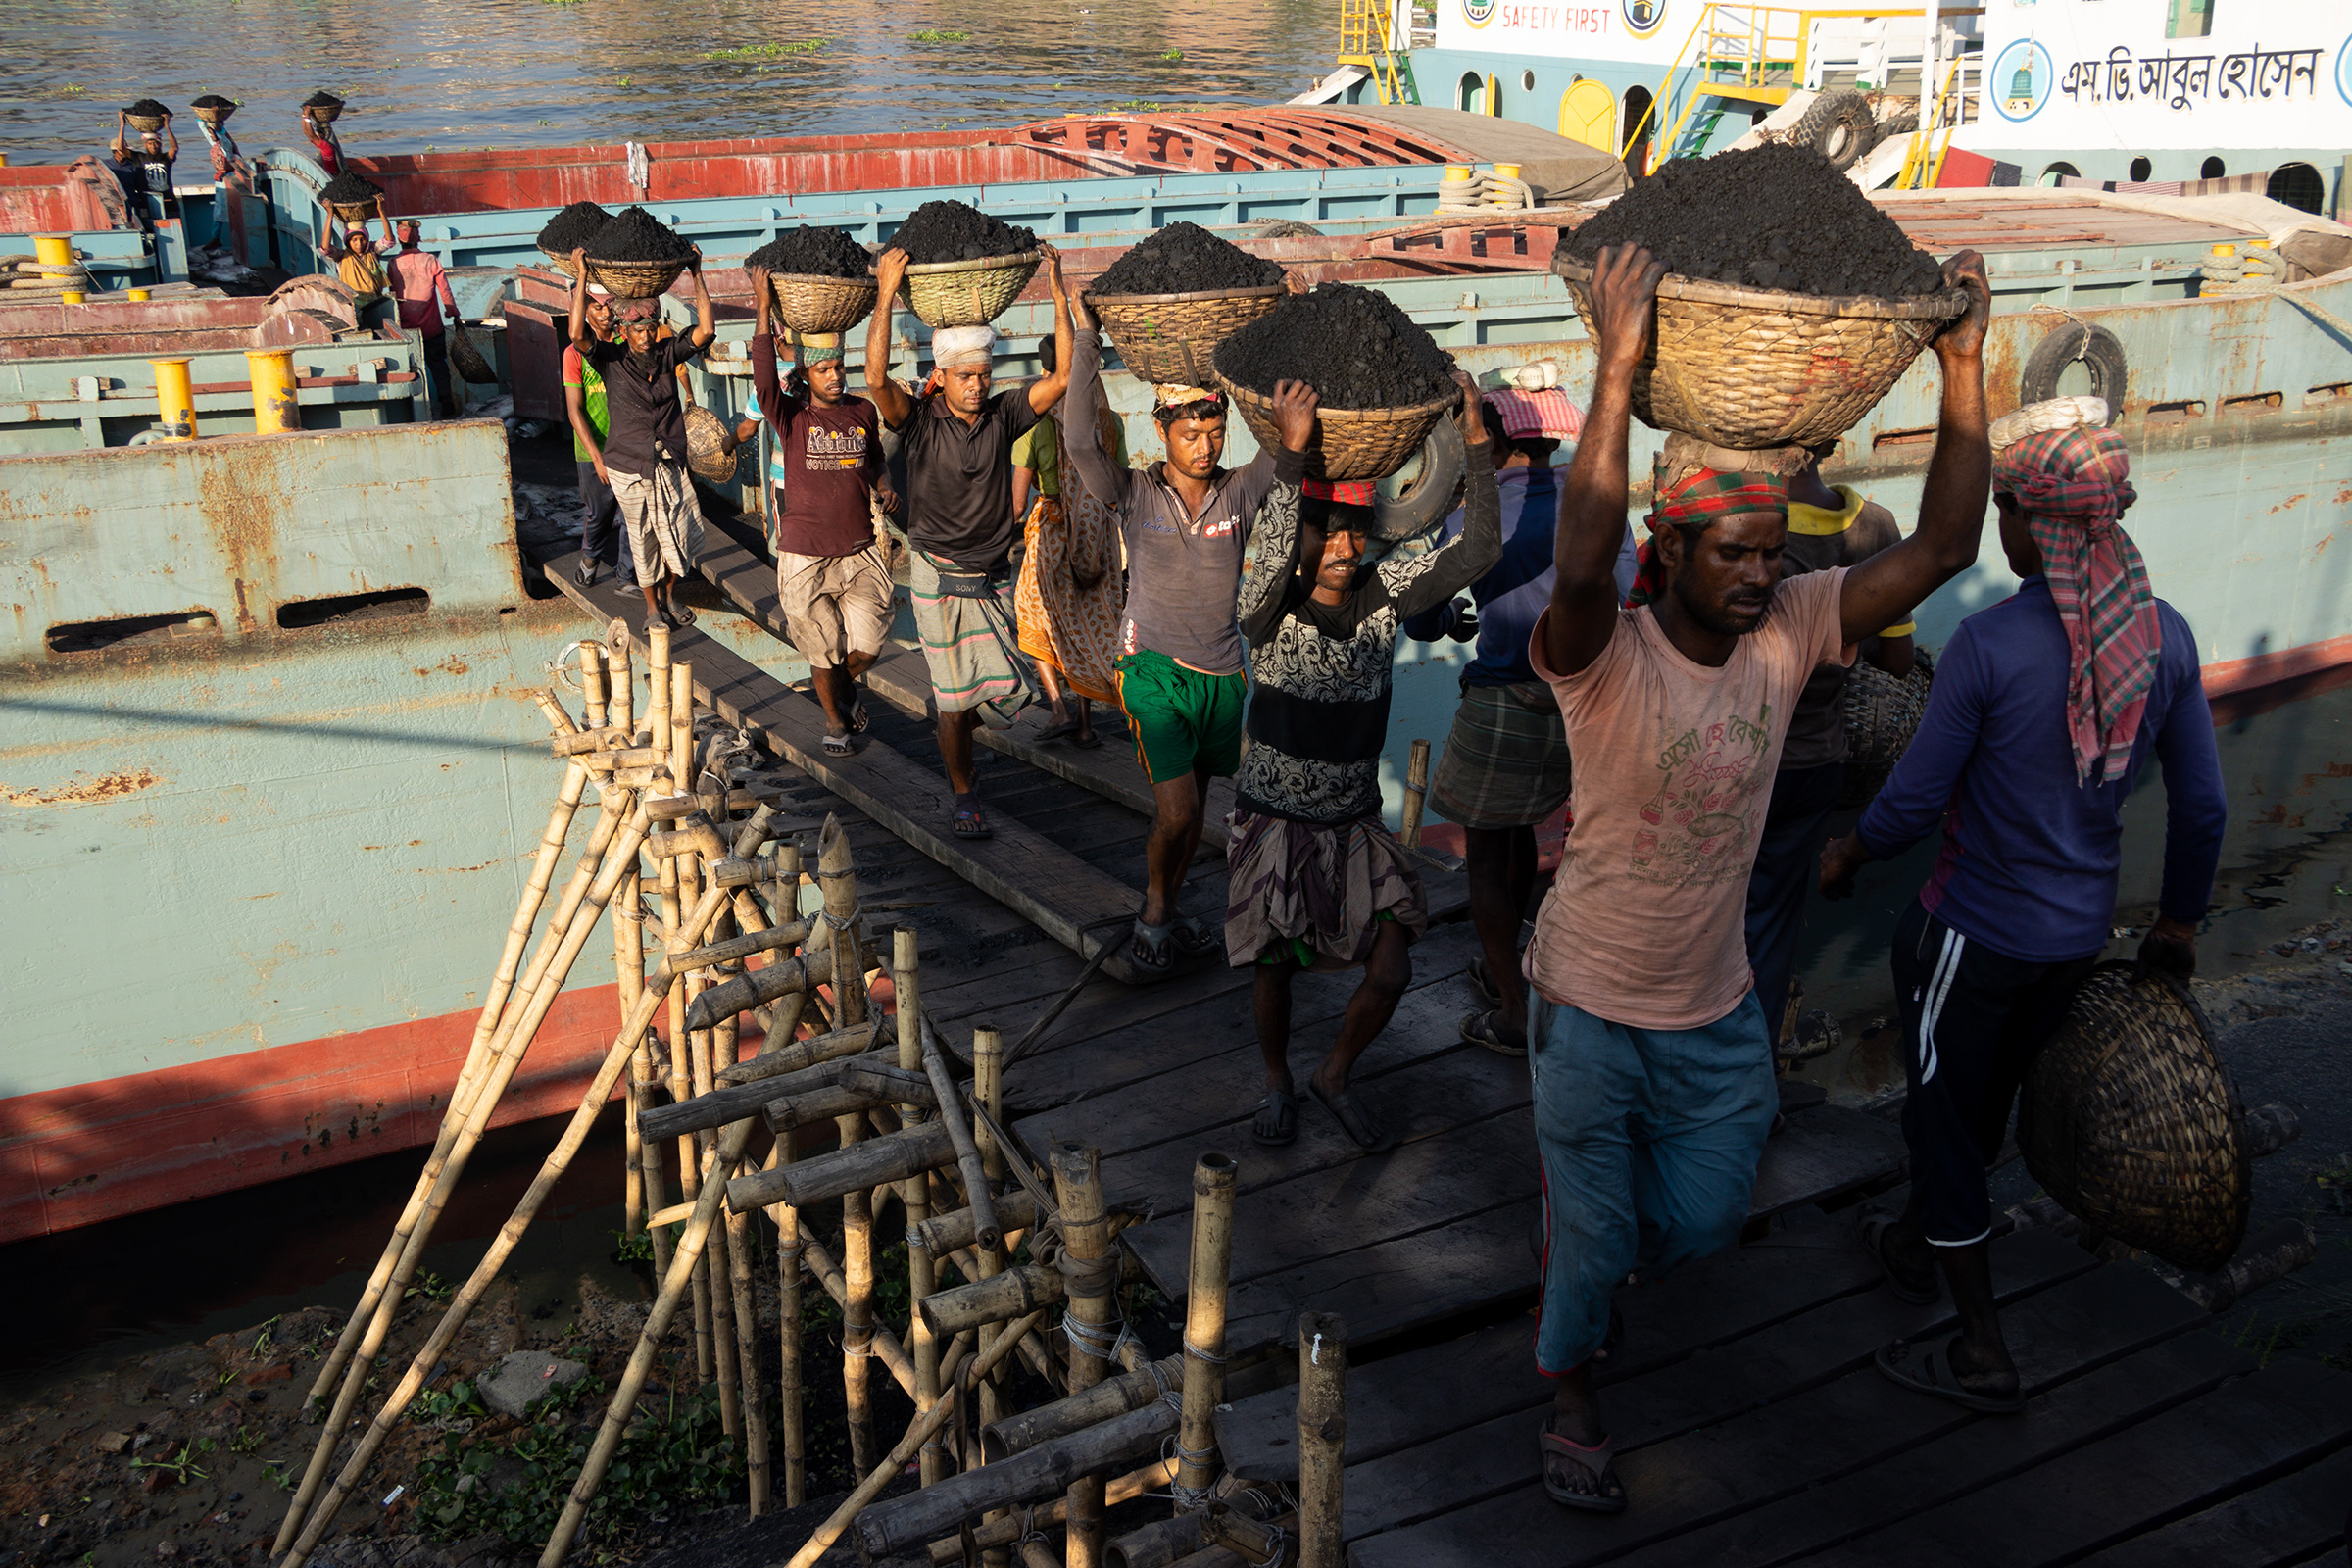 İşçiler, 12 Ocak'ta Bangladeş'in Dhaka kentinde bir kargo gemisinden kömürü boşaltırken başlarının üstünde kömür dolu sepetler taşıyorlar. Gündelik işçiler, gemiden boşaltılan her 30 sepet kömür için yaklaşık 1 dolar kazanıyor.  Kavurucu güneş altında uzun çalışma saatleri, yoğun toz birikimi ve aşırı yük taşıma, çalışanlar için ciddi sağlık tehlikeleri oluşturmaktadır.  (Joy Saha—Shutterstock)